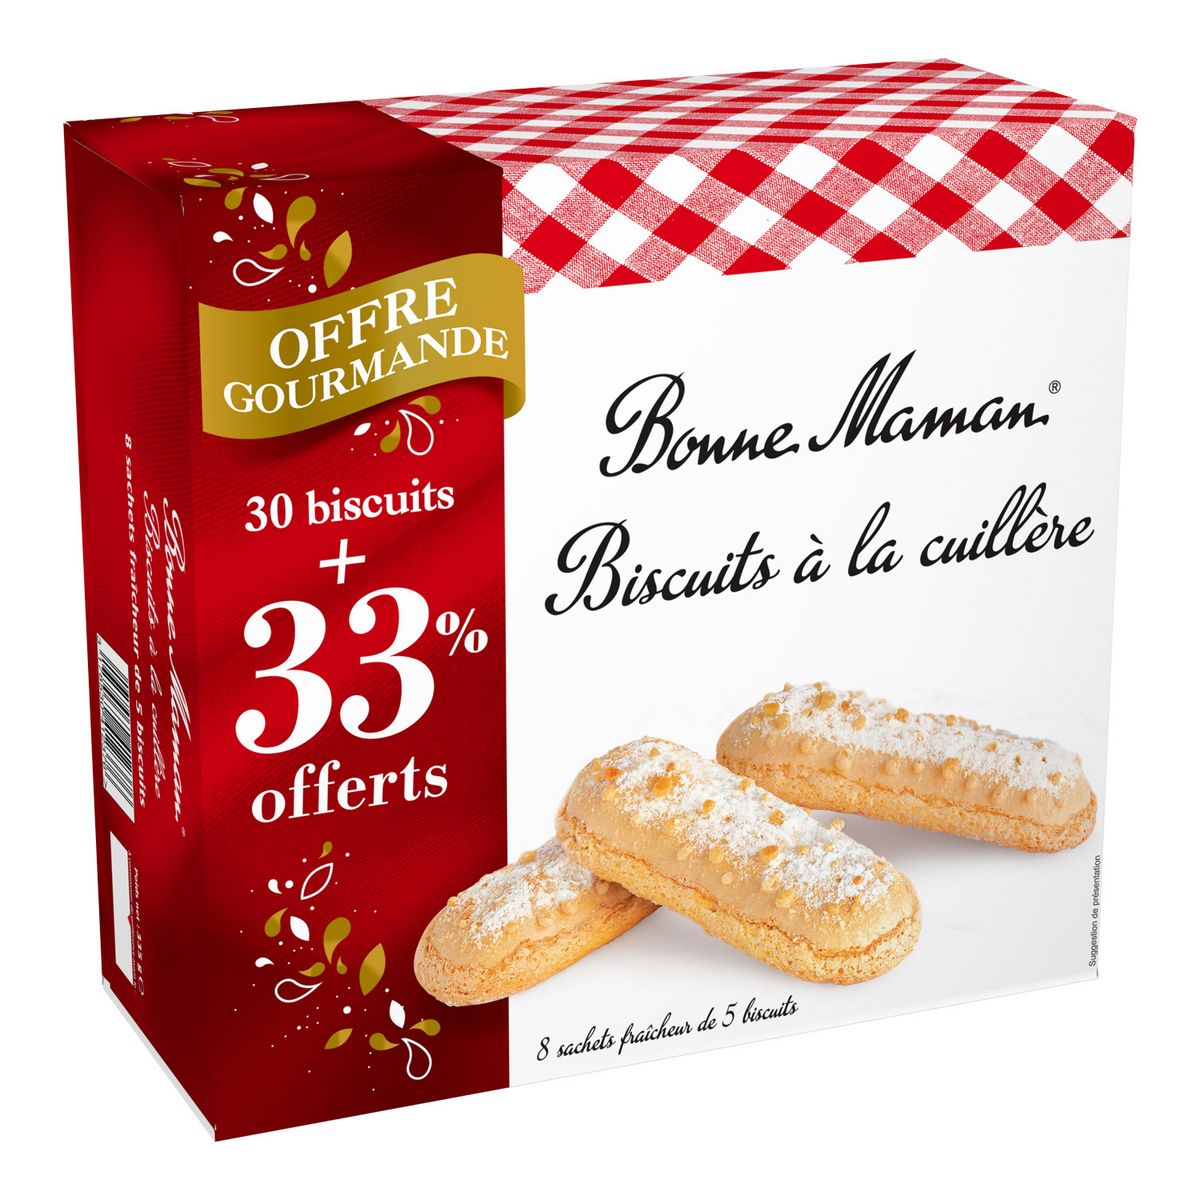 BONNE MAMAN Biscuits à la cuillère sachets fraîcheur 8x5 biscuits 340g +33% offert